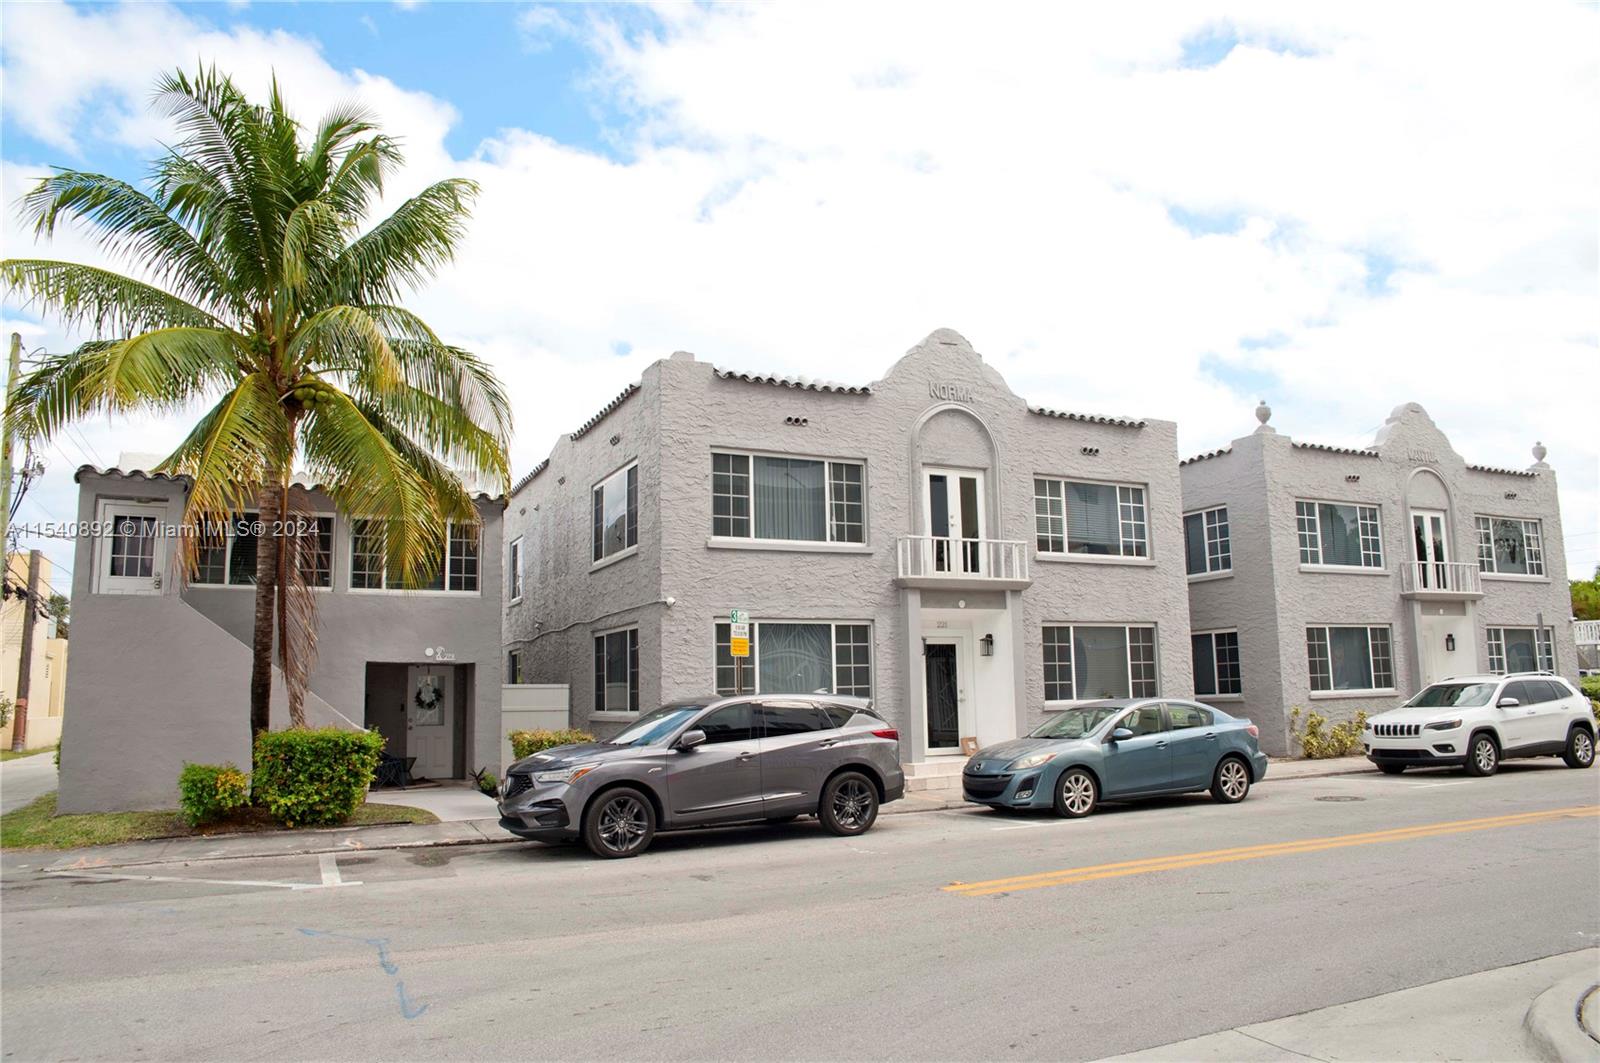 Rental Property at 219223 S 17 Ave Units 1-10, Hollywood, Broward County, Florida -  - $2,550,000 MO.